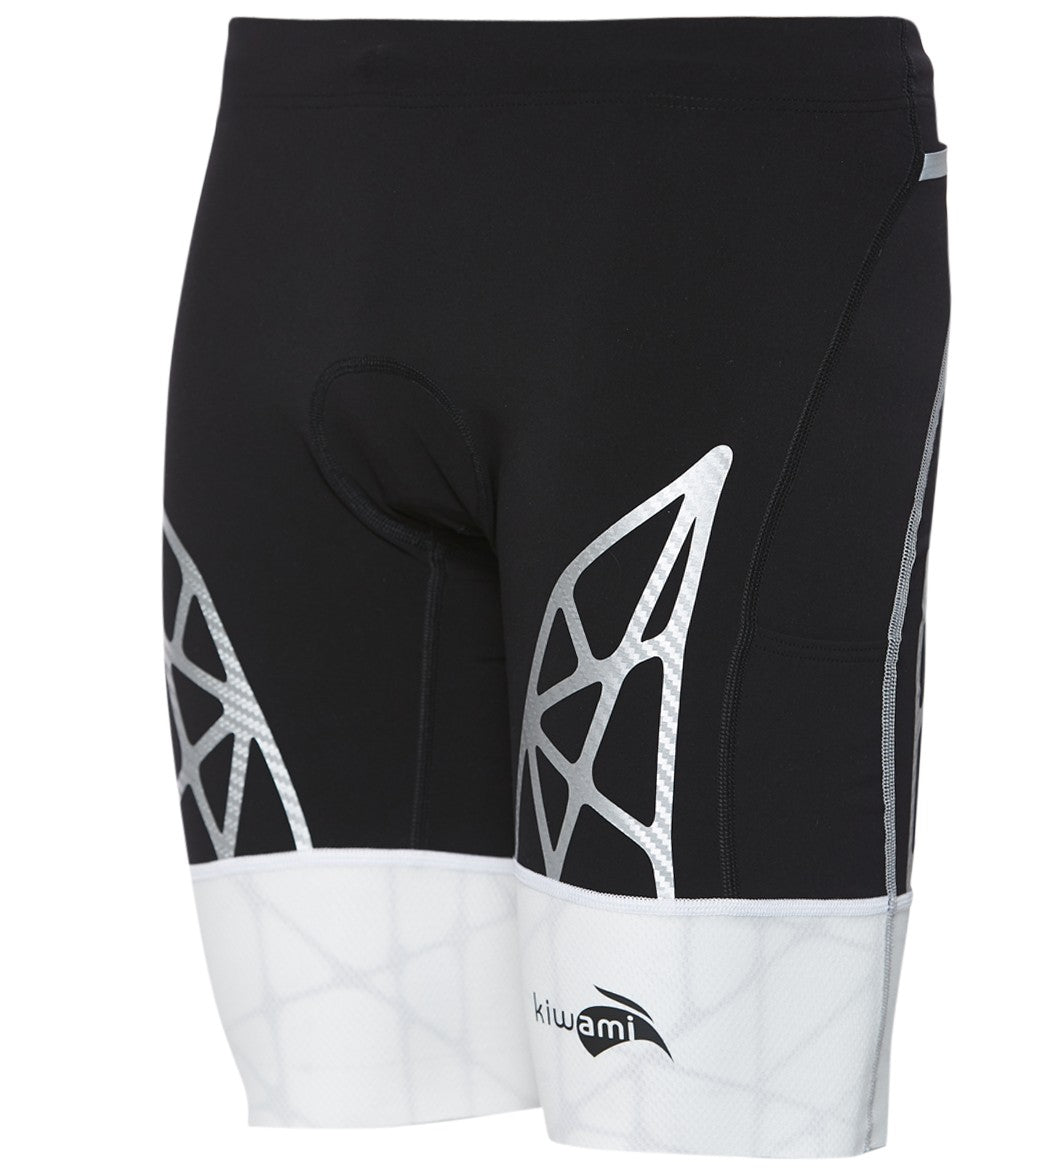 Kiwami Men's Spider Tri Shorts - White Small - Swimoutlet.com